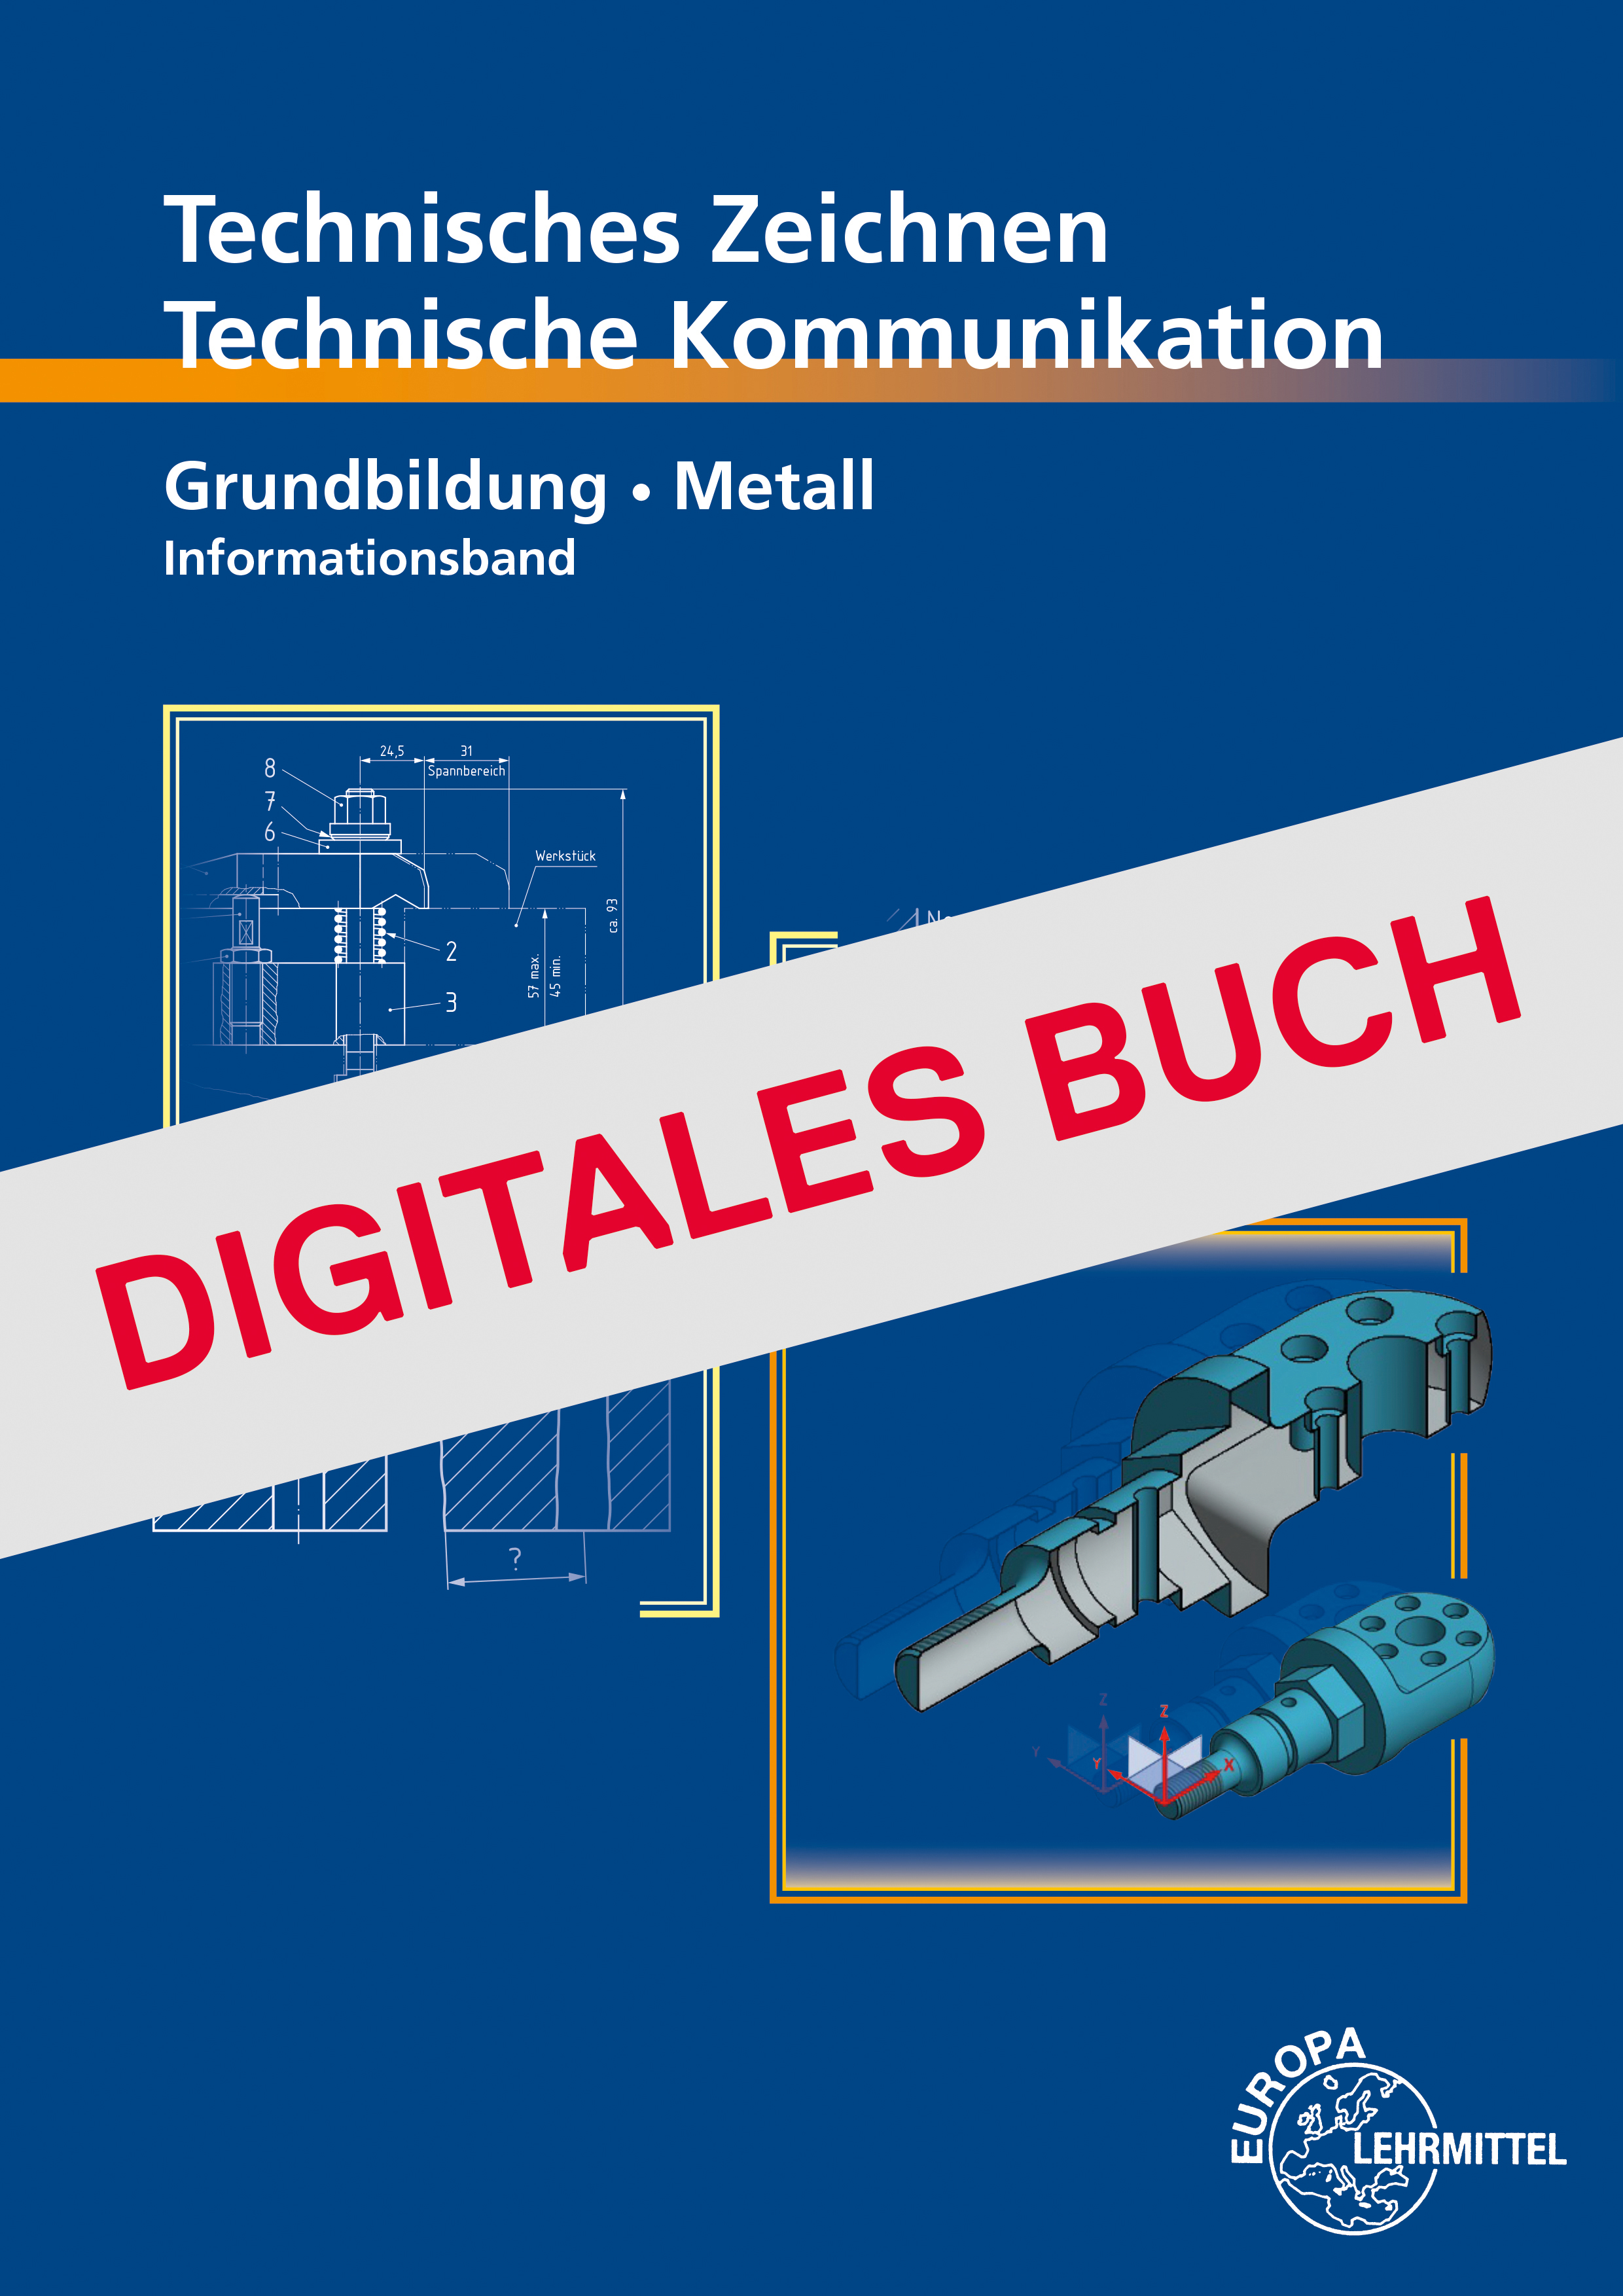 Technische Kommunikation Metall Grundbildung - Informationsband -Digitales Buch